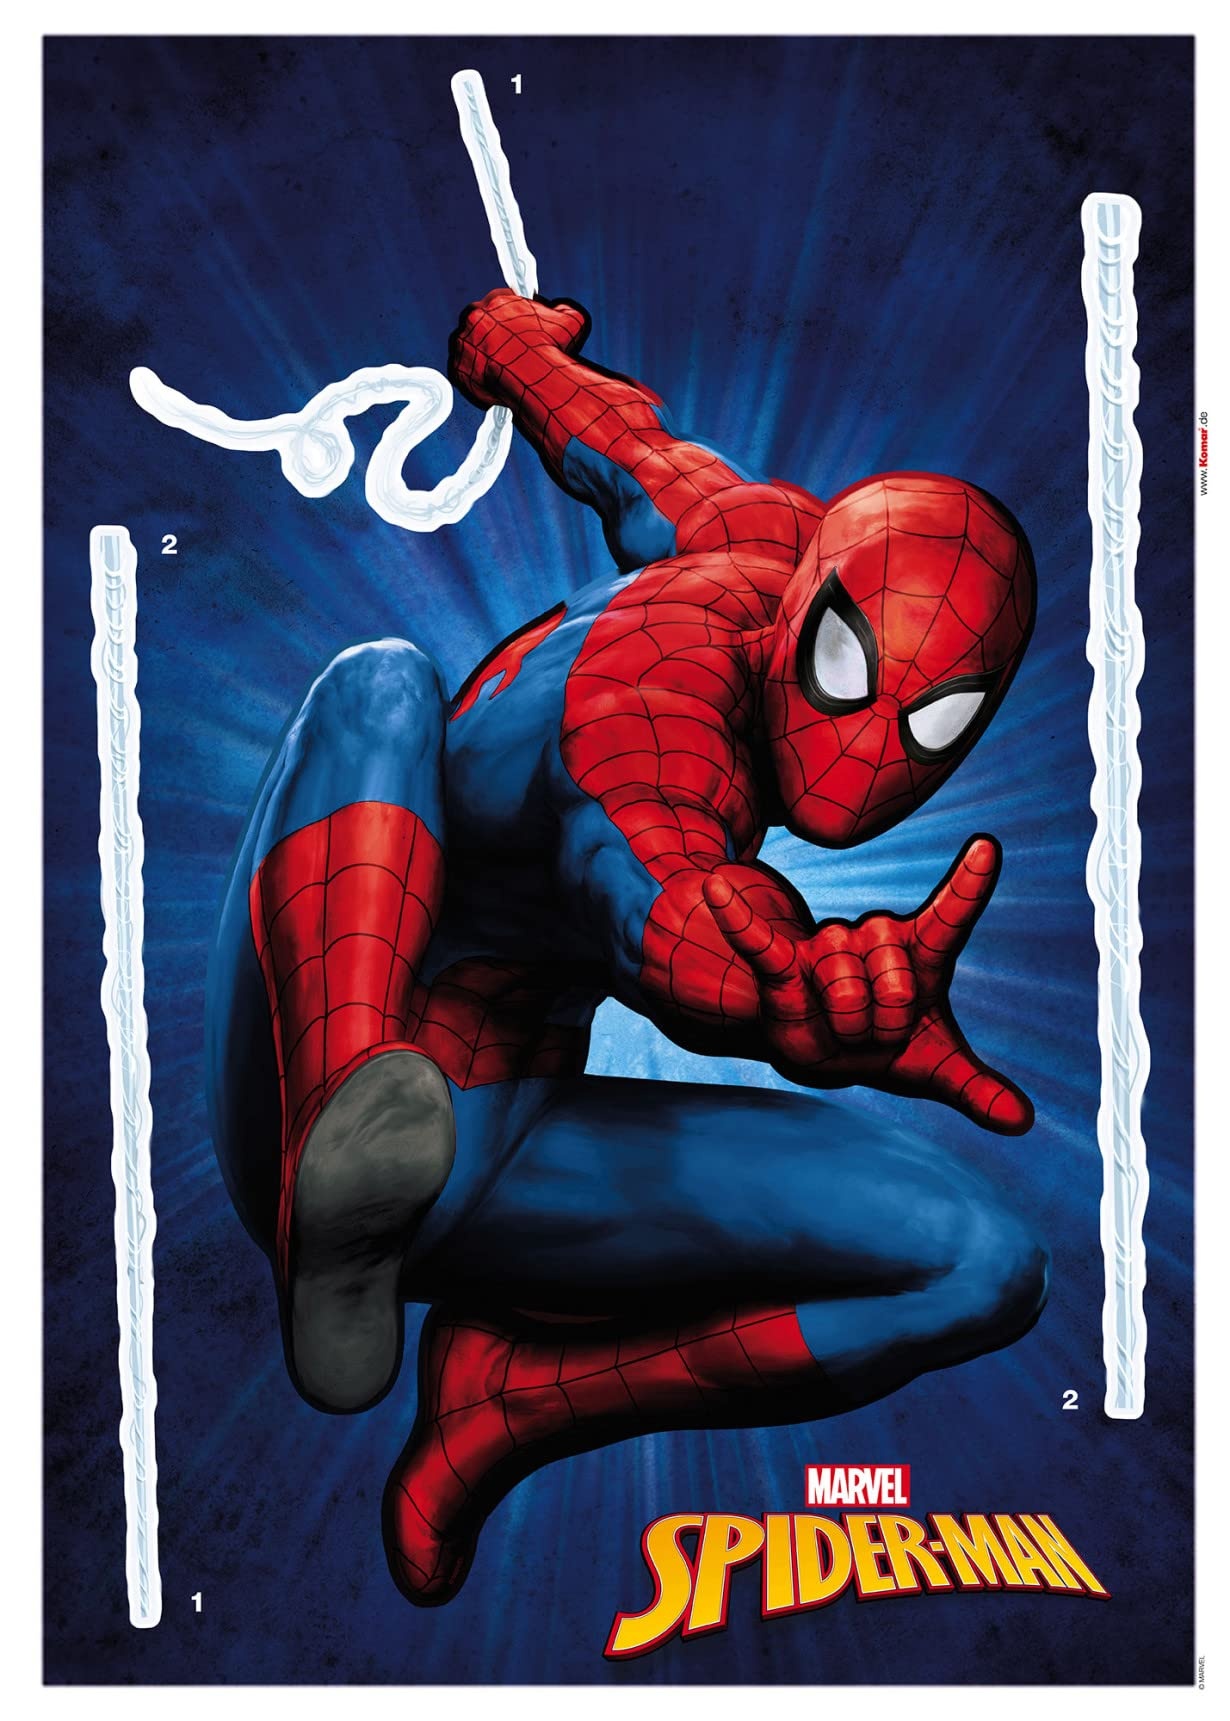 Spider-Man Wandtattoo von Komar - Größe 50 x 70 cm - Wandsticker, Aufkleber, Wandaufkleber, Kinderzimmer, Spiderman, Marvel